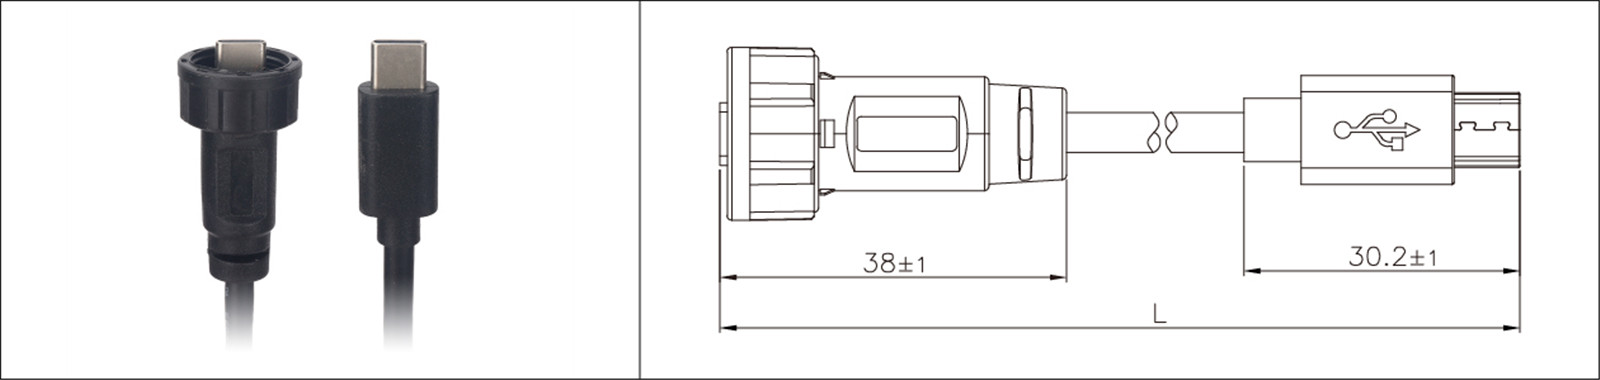 Micro USB 面板安装类型 2.0 3.0 母头和公头防水 IP67 包覆成型延长线工业 connecto-02 (7)